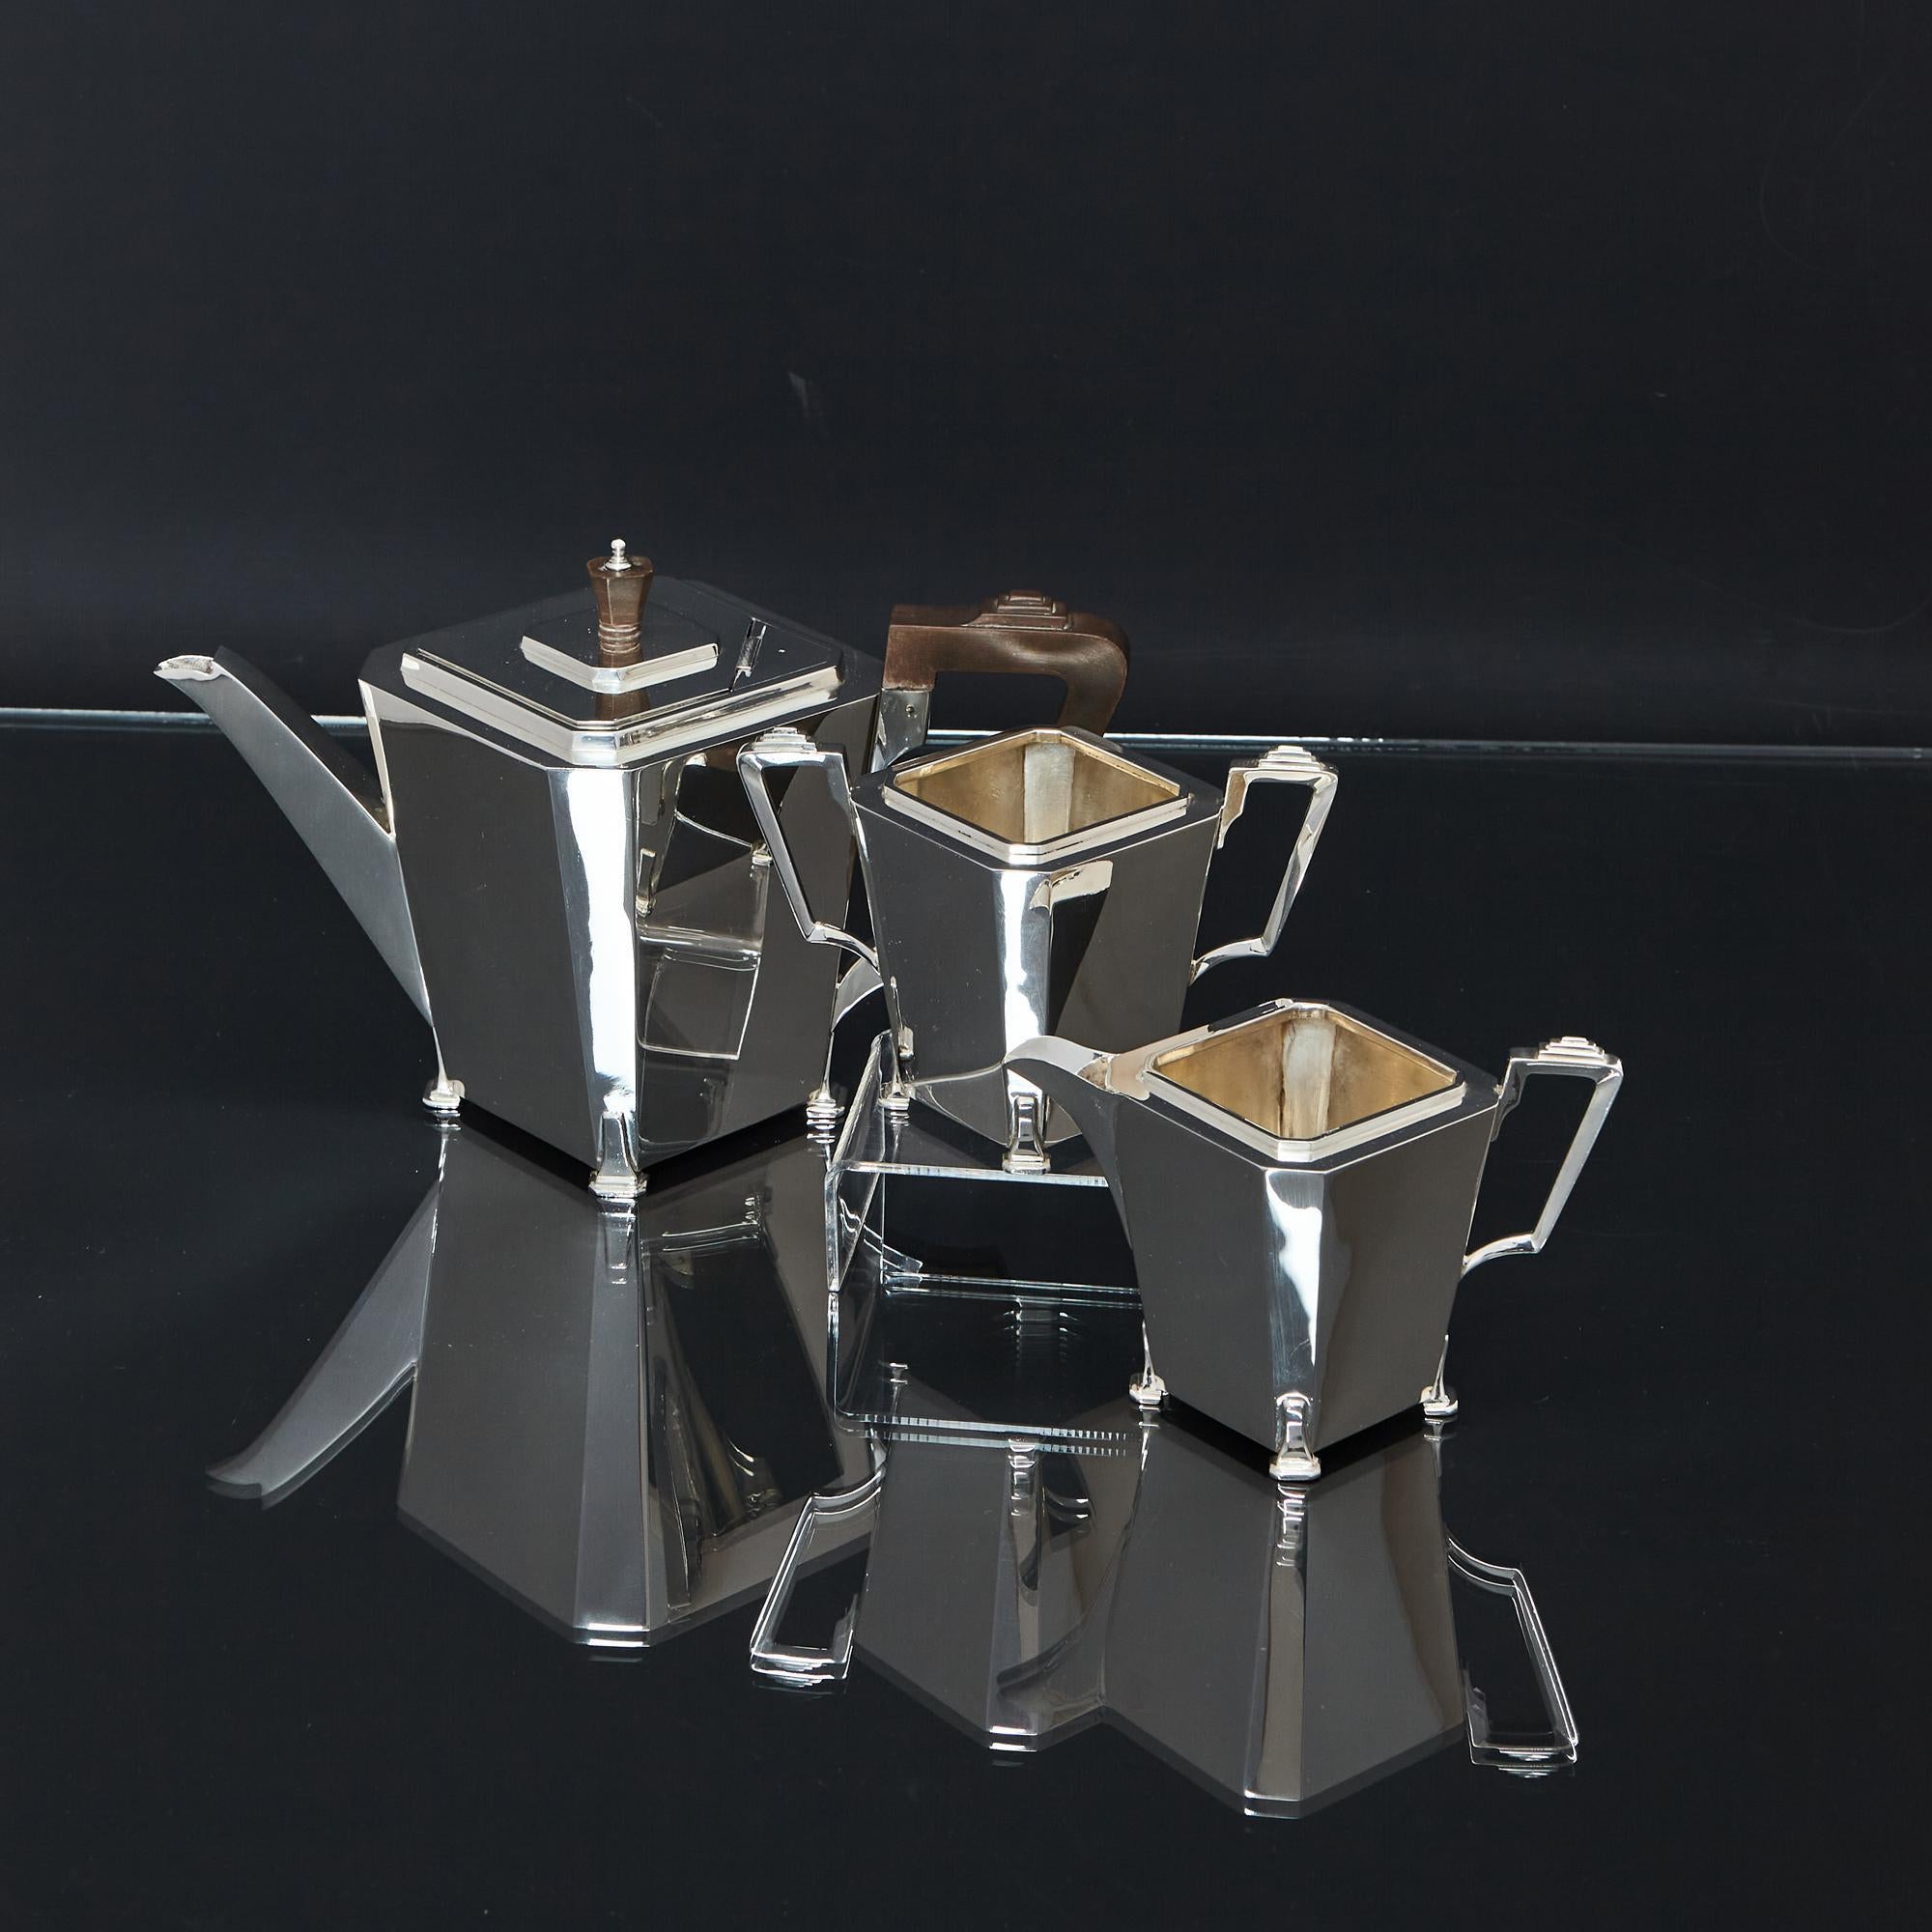 Service à thé en argent Art Déco très élégant, composé de trois pièces, aux lignes épurées typiques de l'époque. Toutes les pièces de ce service à thé en argent fabriqué à la main présentent des corps géométriques à panneaux carrés avec des coins